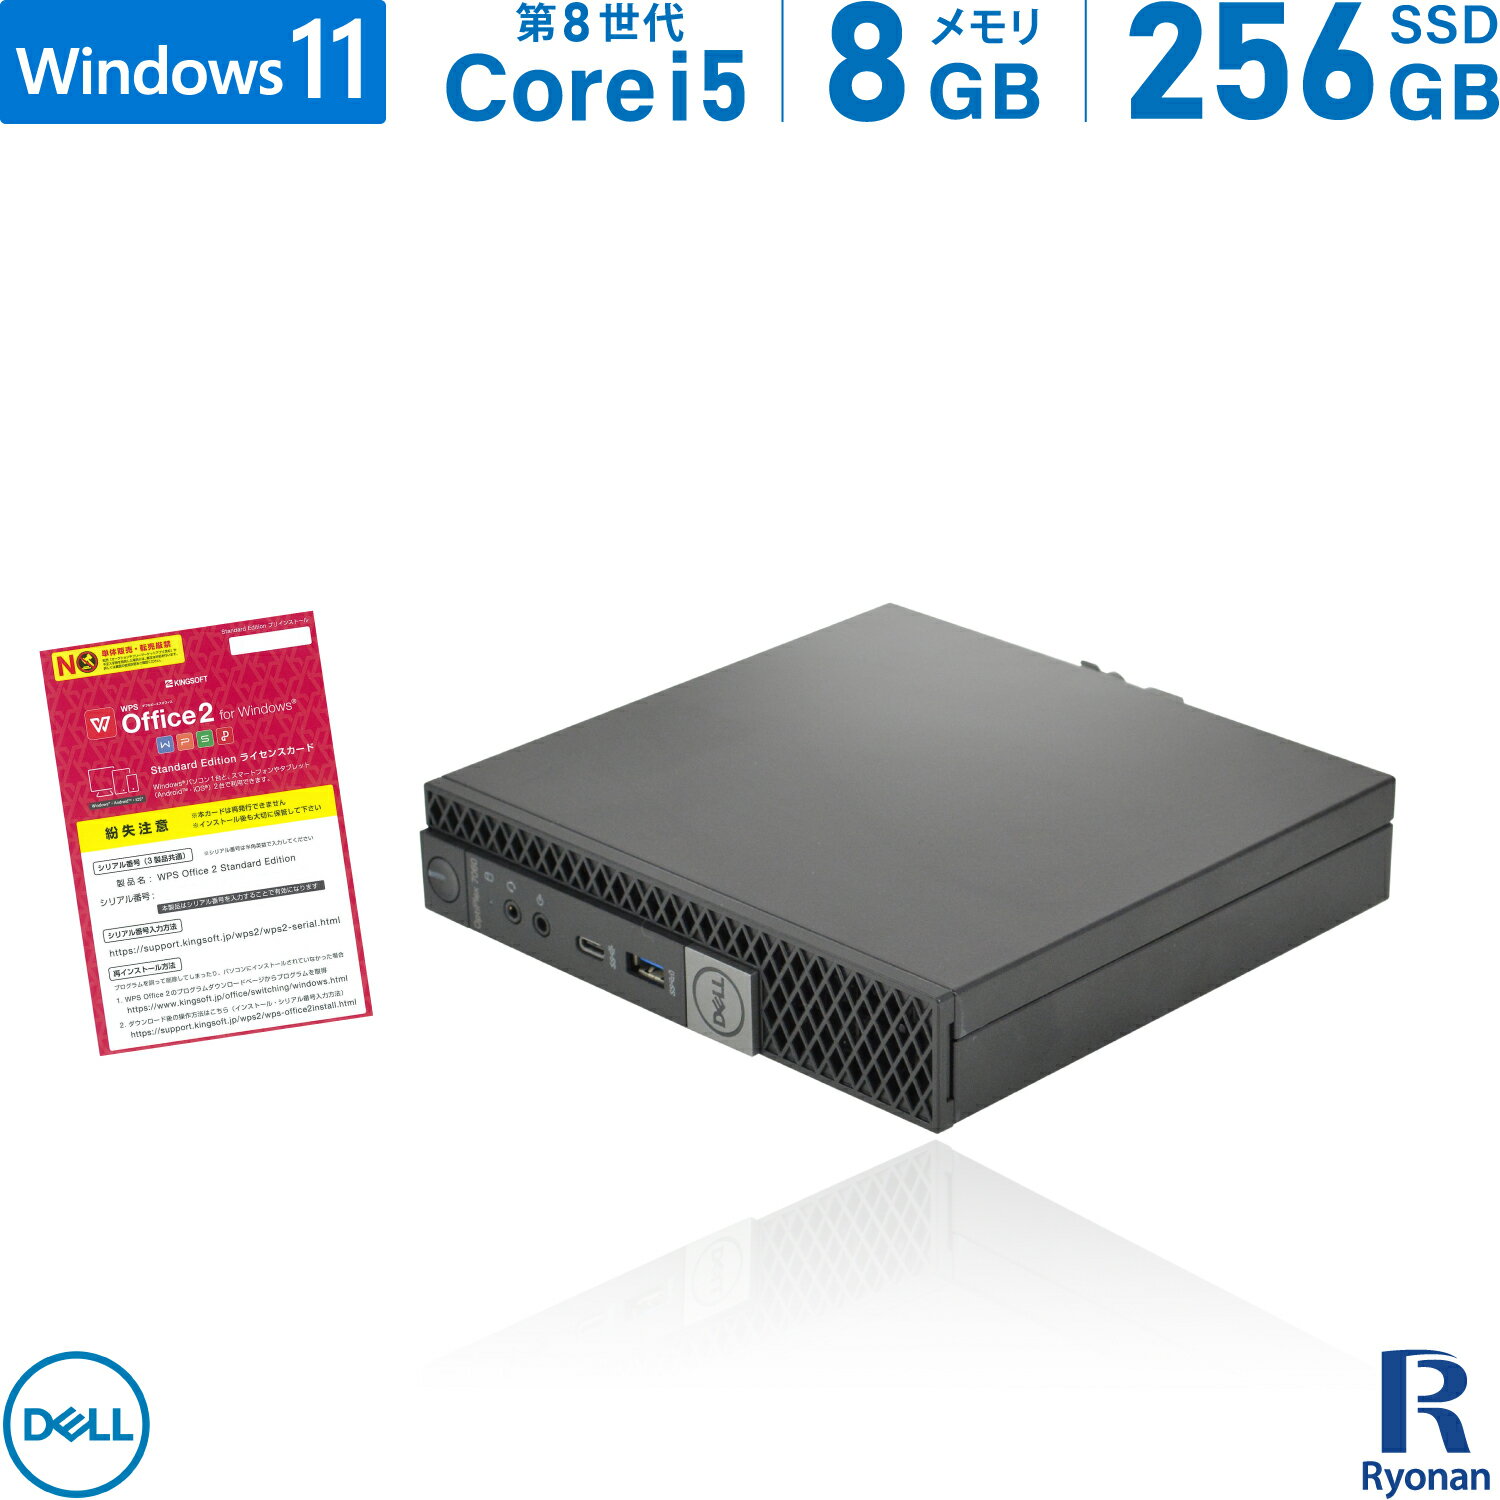 【10 OFFクーポン配布中】DELL OptiPlex 7060 micro 第8世代 Core i5 メモリ:8GB 新品SSD:240GB デスクトップパソコン USB 3.0 Type-C Office付 パソコン デスクトップ 中古パソコン Windows 11 搭載 Windows 10 無線LAN付き ミニPC